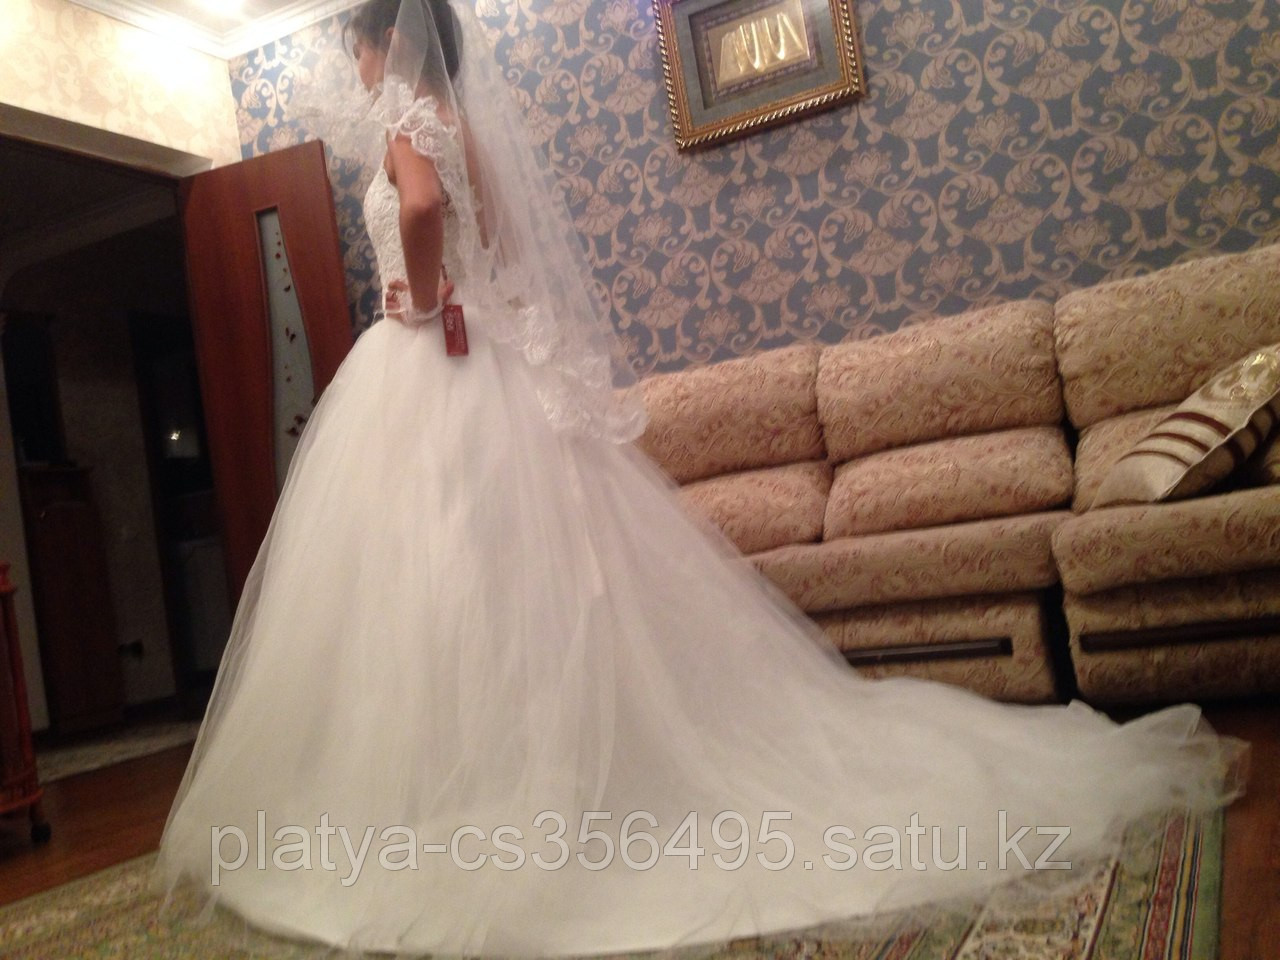 Свадебные платья фото, свадебные платья алматы, свадебные платья 2014, прокат свадебных платьев.